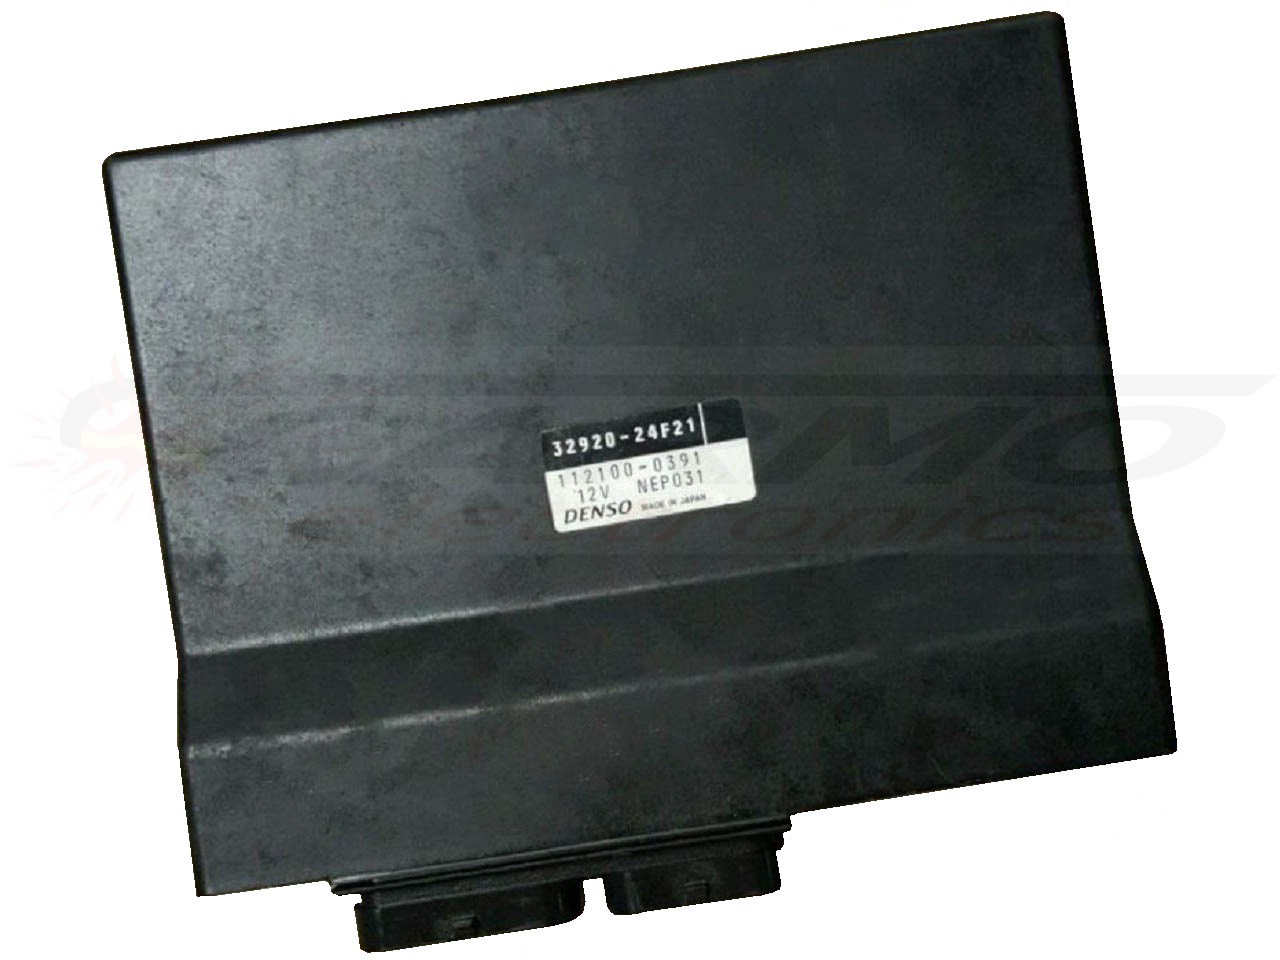 GSXR1300 Hayabusa ECU ECM CDI controlador de caixa preta de computador (32920-24F01, -24F20, -24F21)